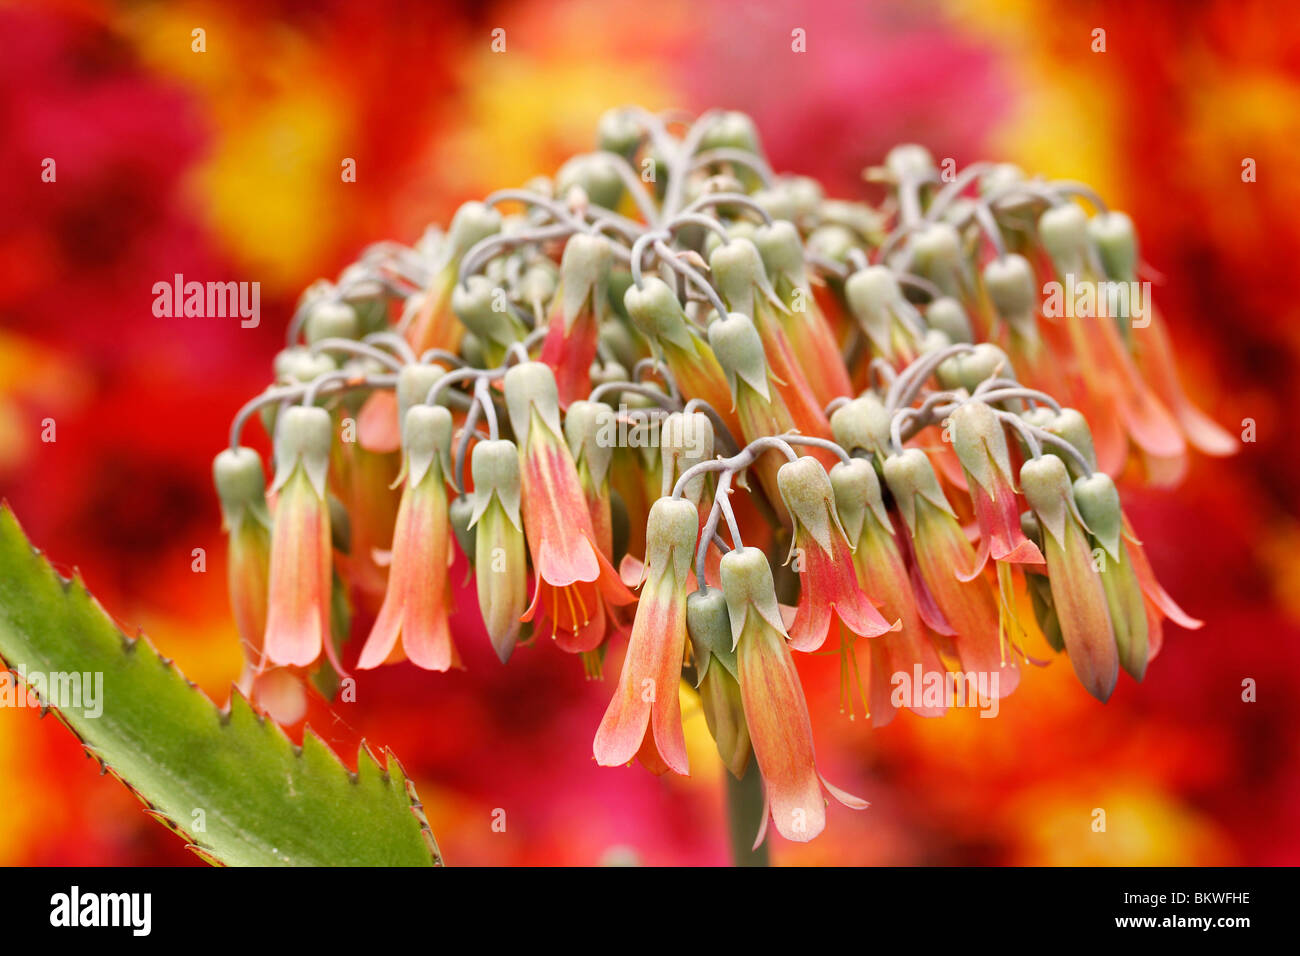 Succulent plant Bryophyllum pinnatum Stock Photo